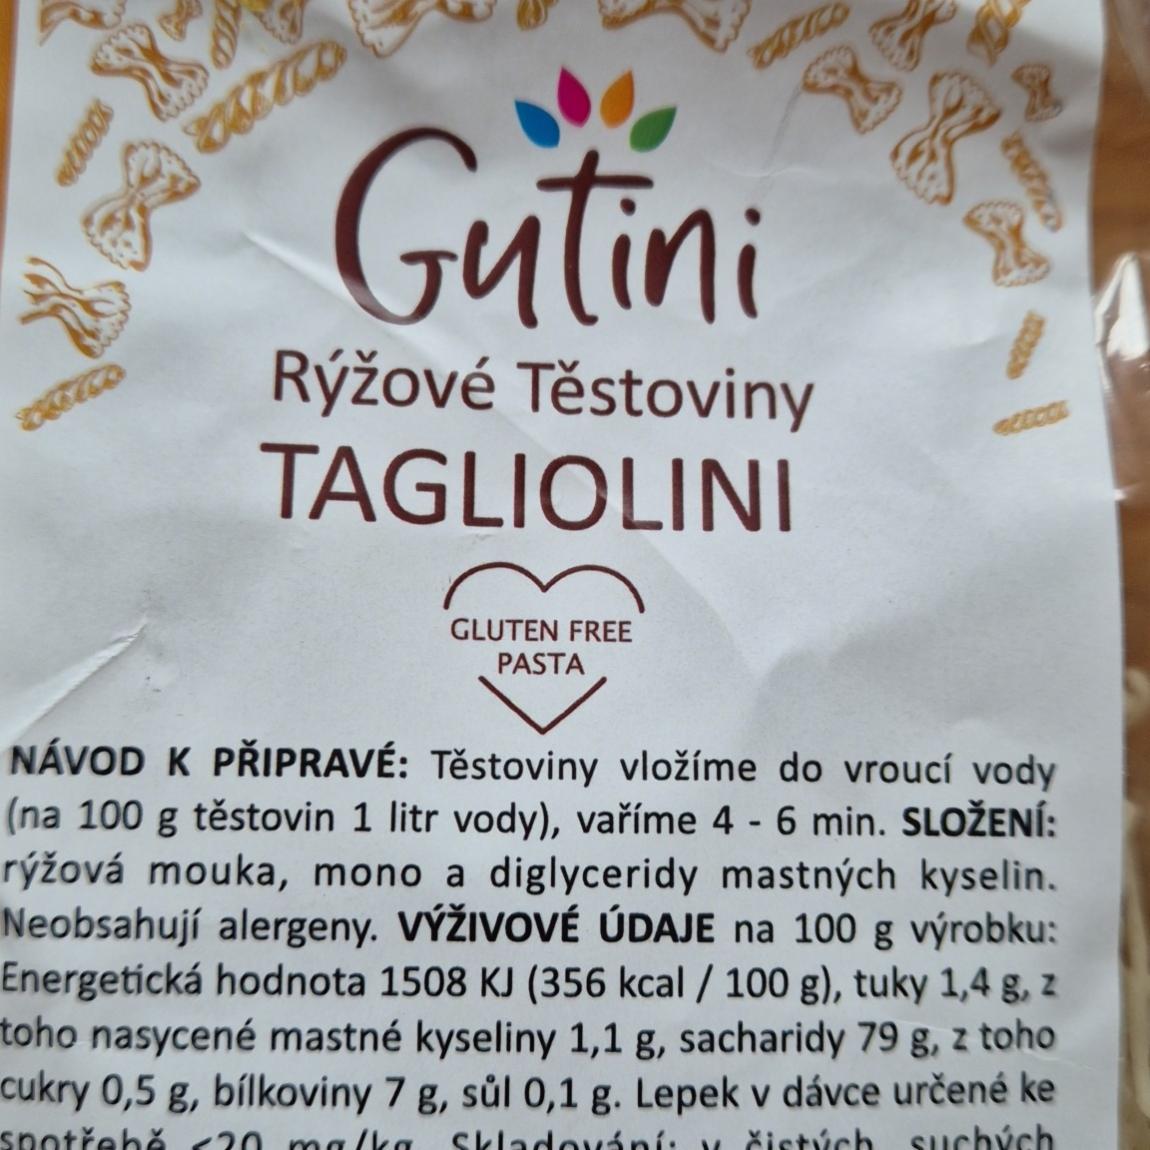 Fotografie - Rýžové těstoviny tagliolini Gutini